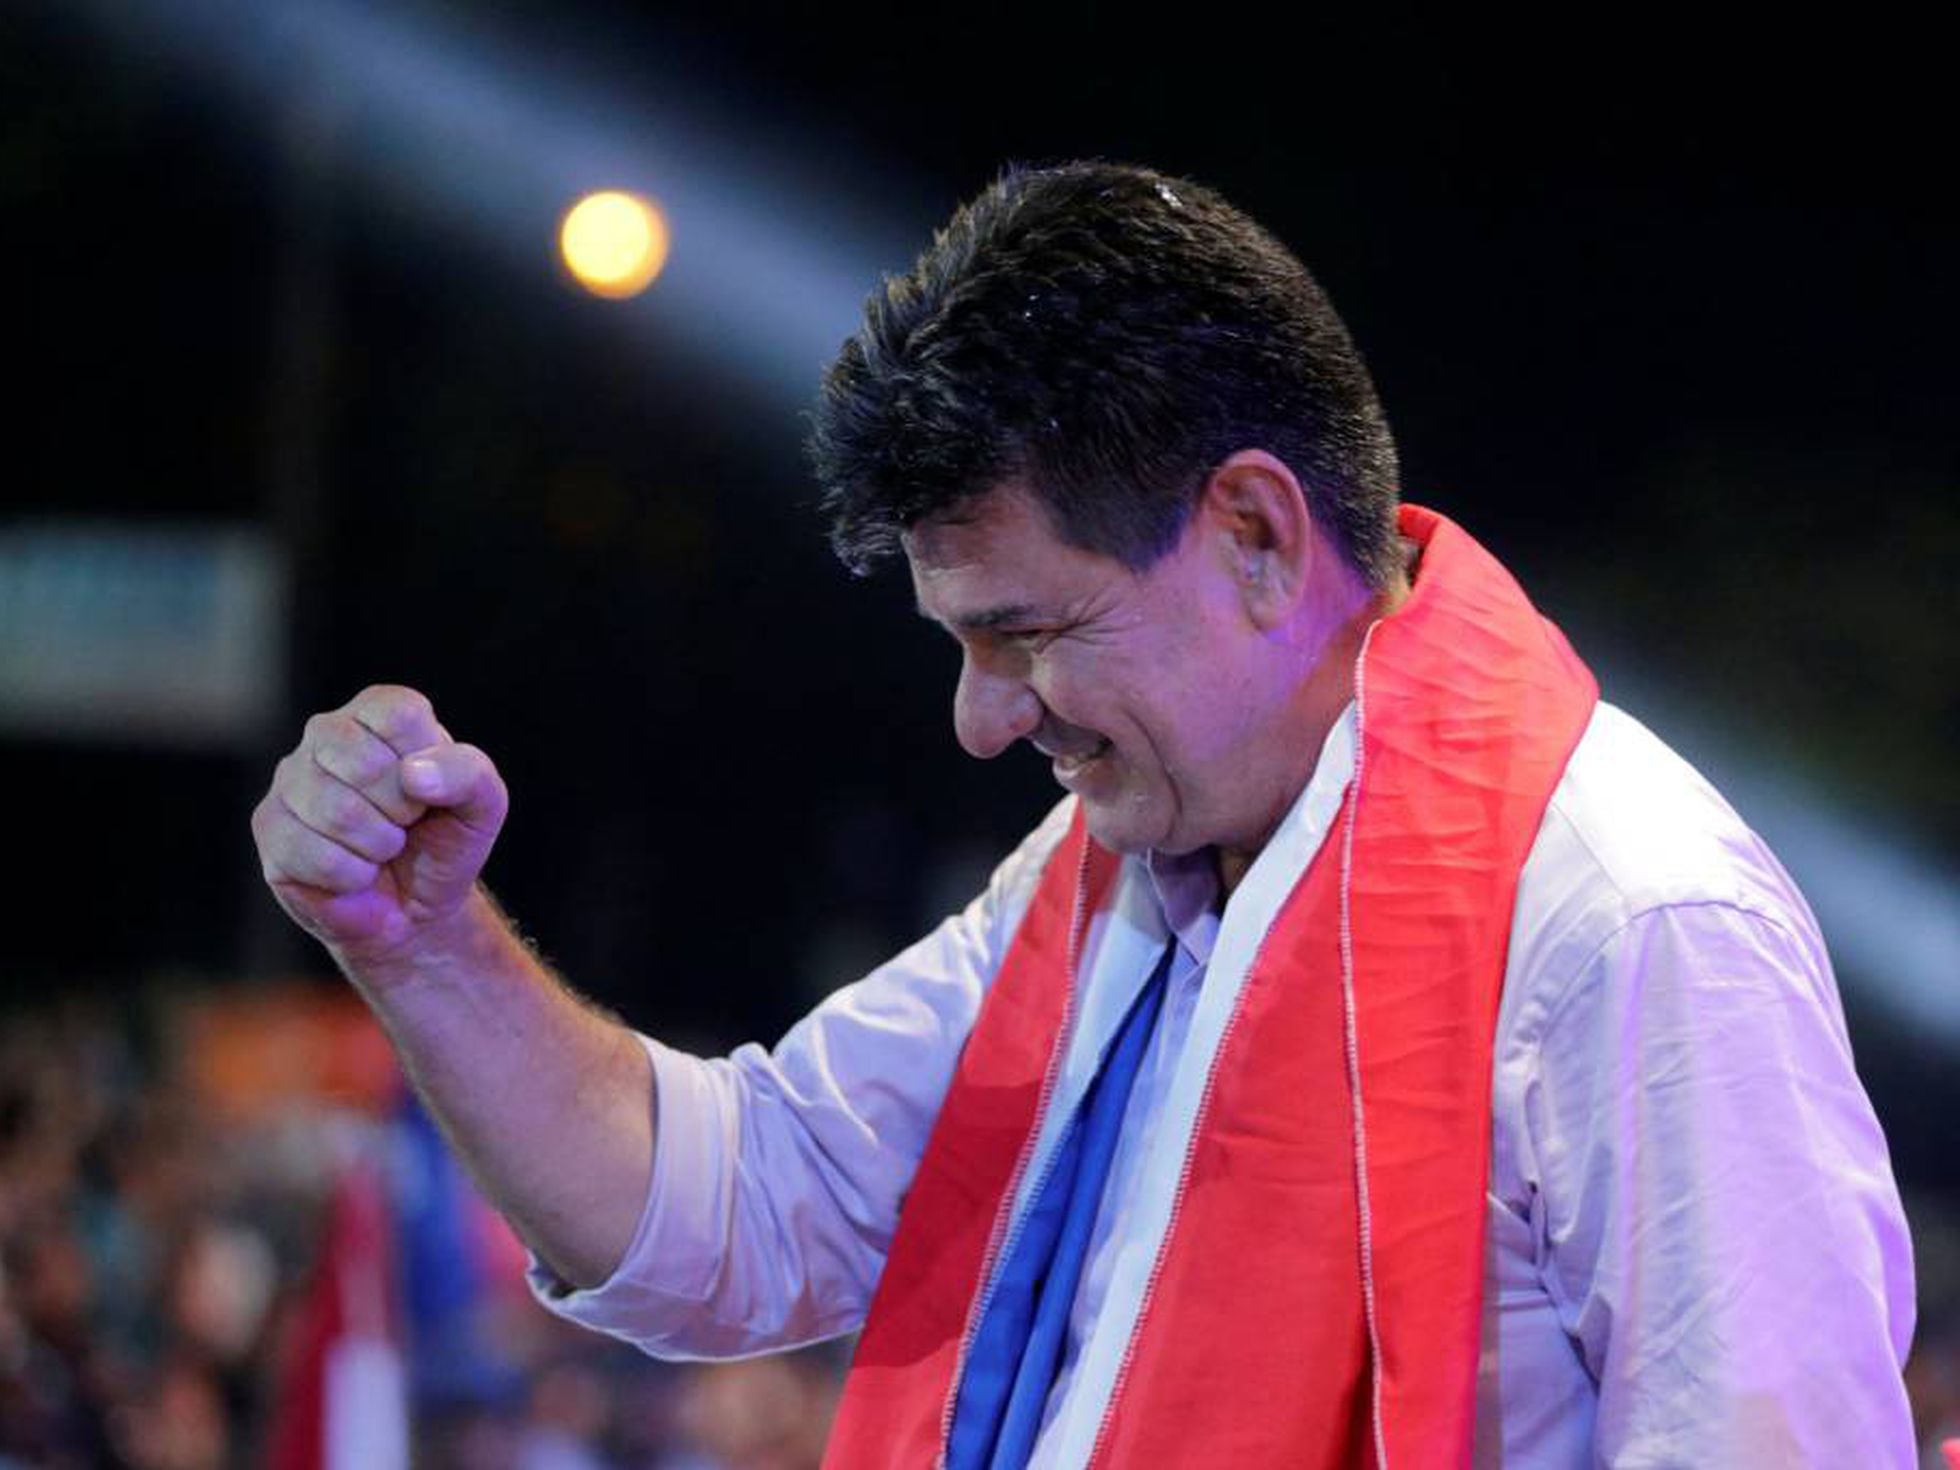 Elecciones en Paraguay: Efraín Alegre, el candidato que quiere revancha |  America | EL PAÍS